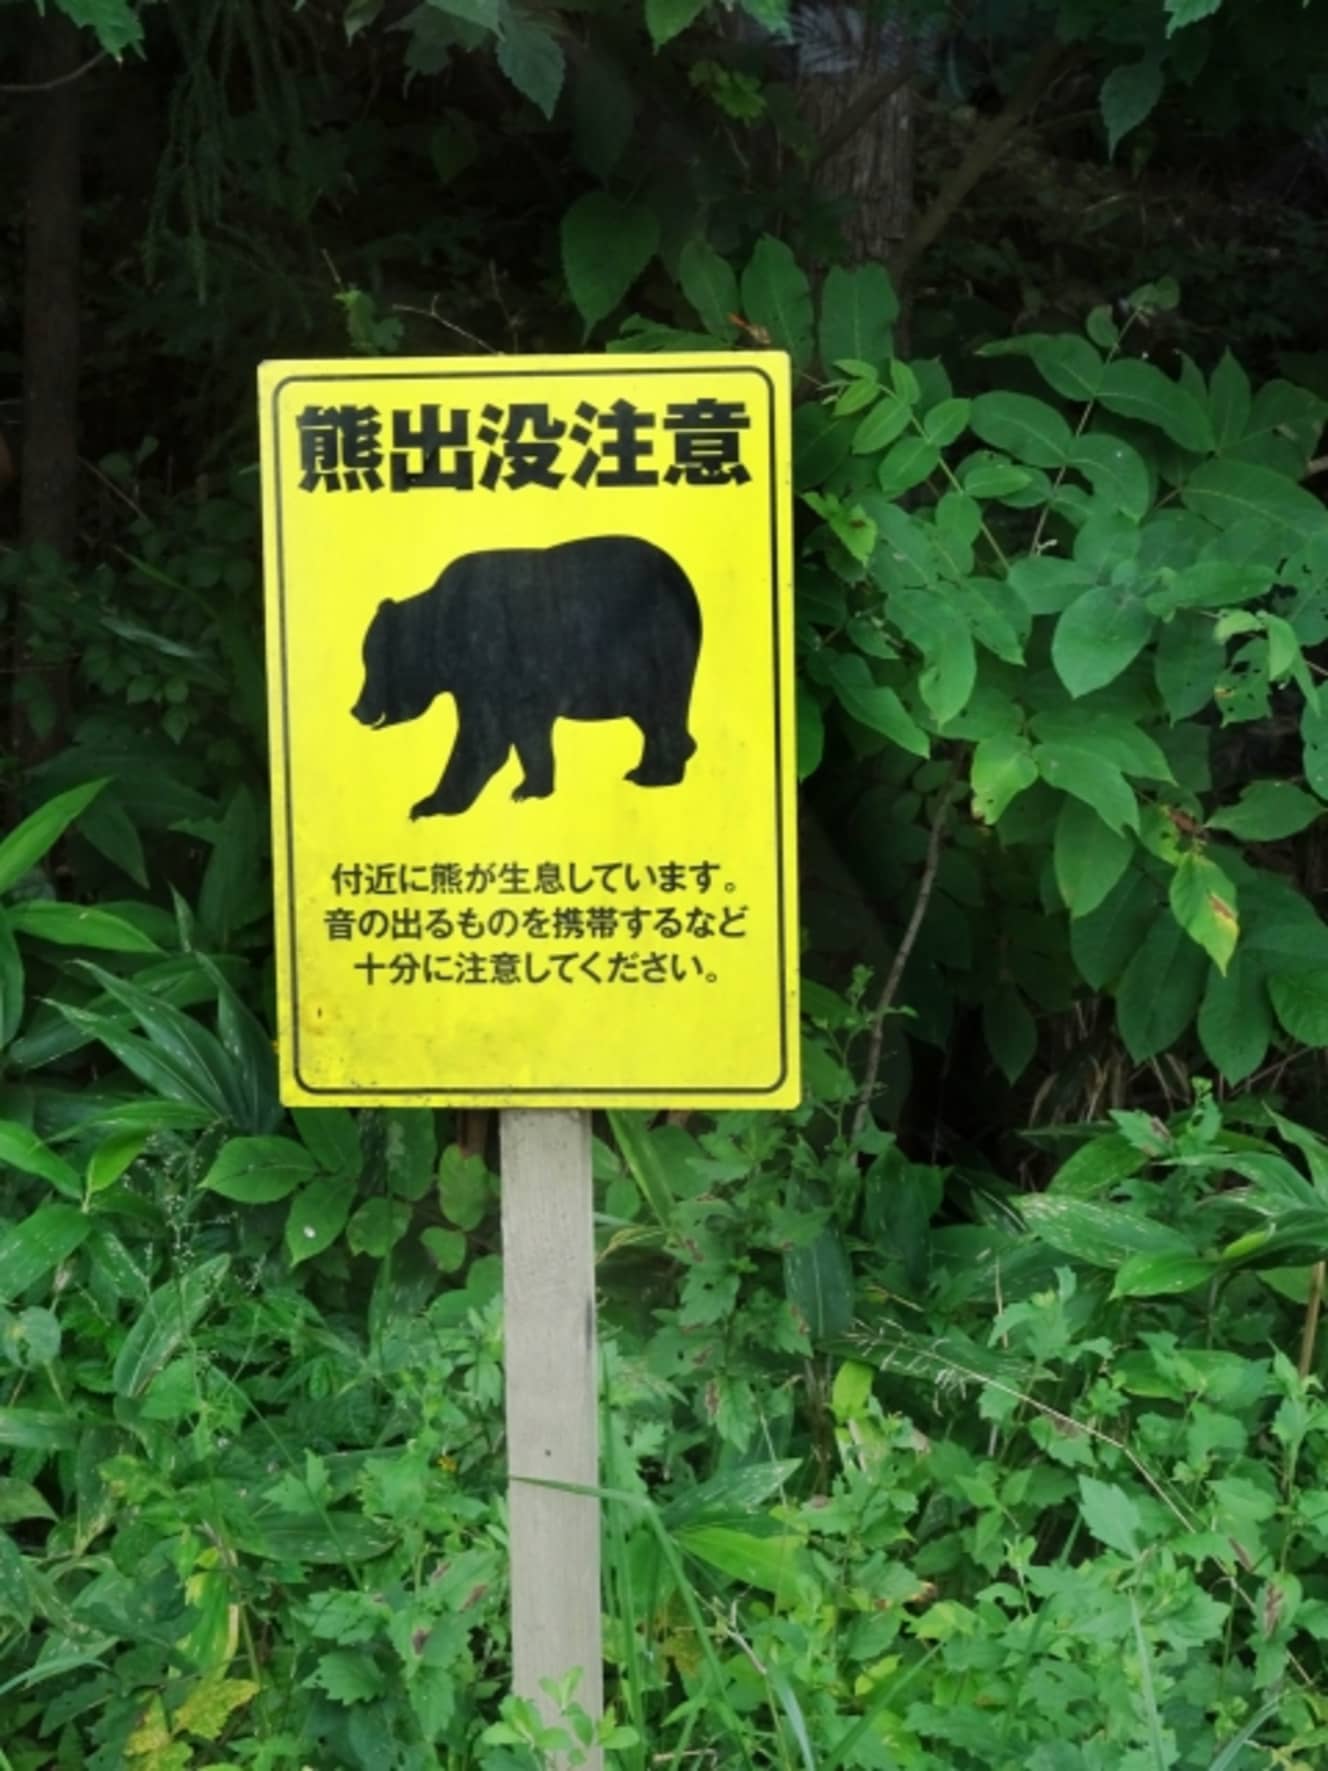 クマ出没注意の看板は北海道内では珍しくない